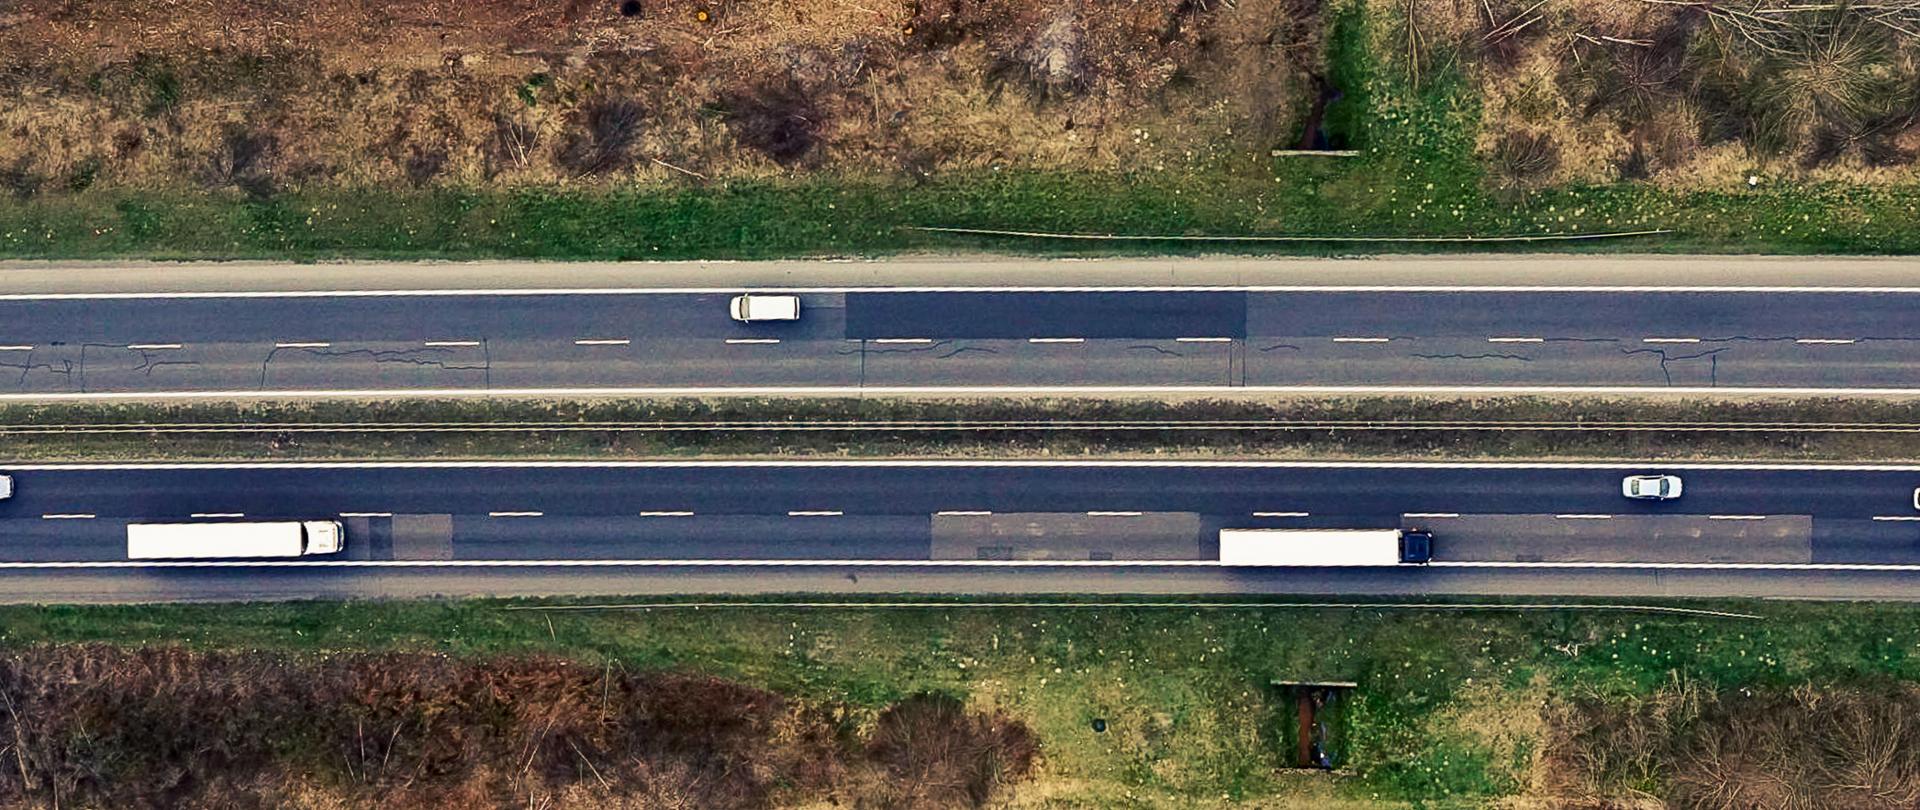 Zdjęcie lotnicze dwujezdniowej drogi krajowej. Na jezdni widocznej samochody osobowe i ciężarowe poruszające się po drodze. Drogę pod kątem prostym przecina niewielki ciek. 